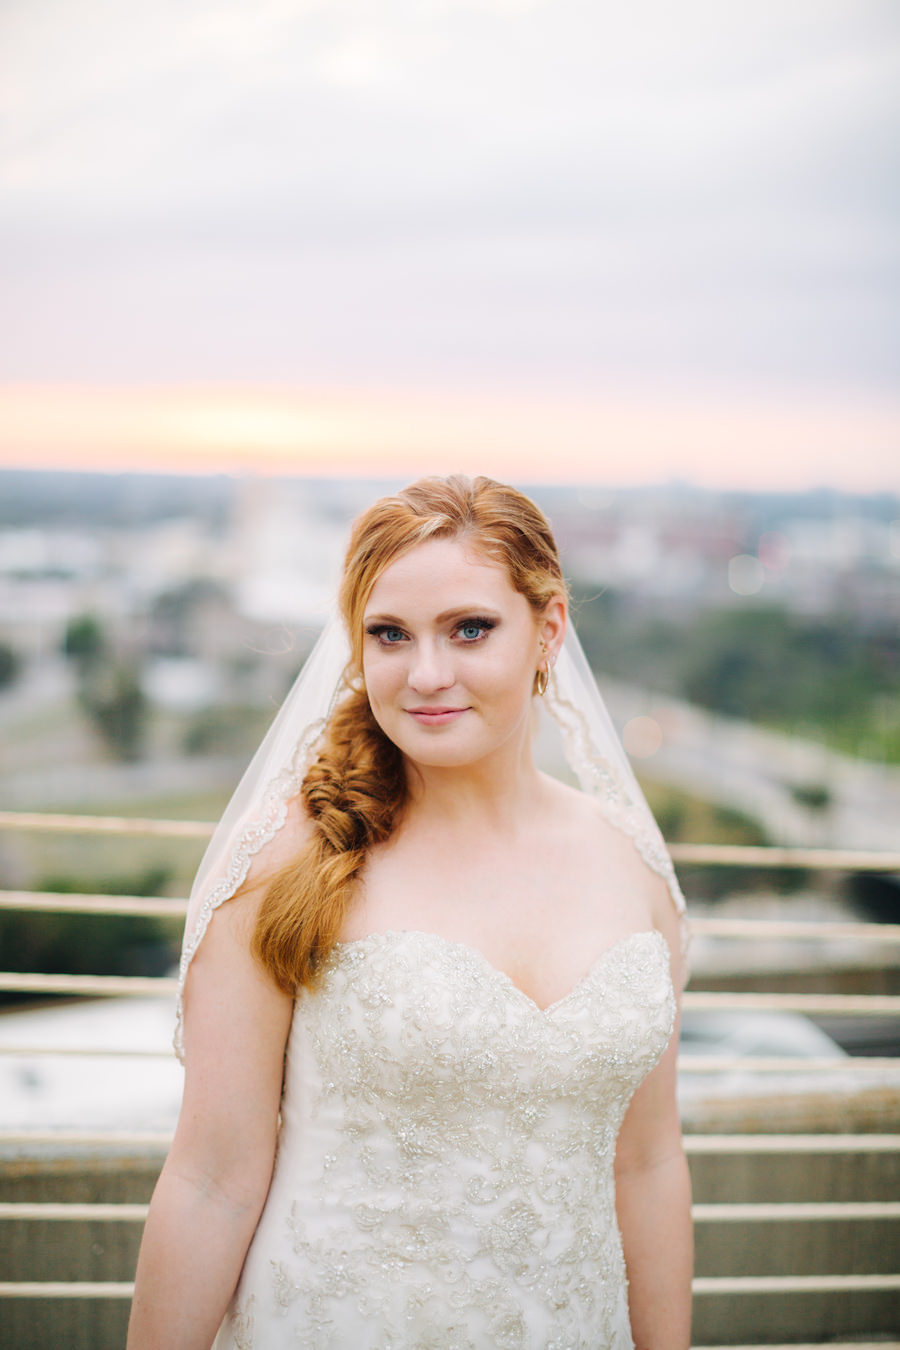 Outdoor Tampa Bridal Portrait | The Tampa Club Wedding Venue